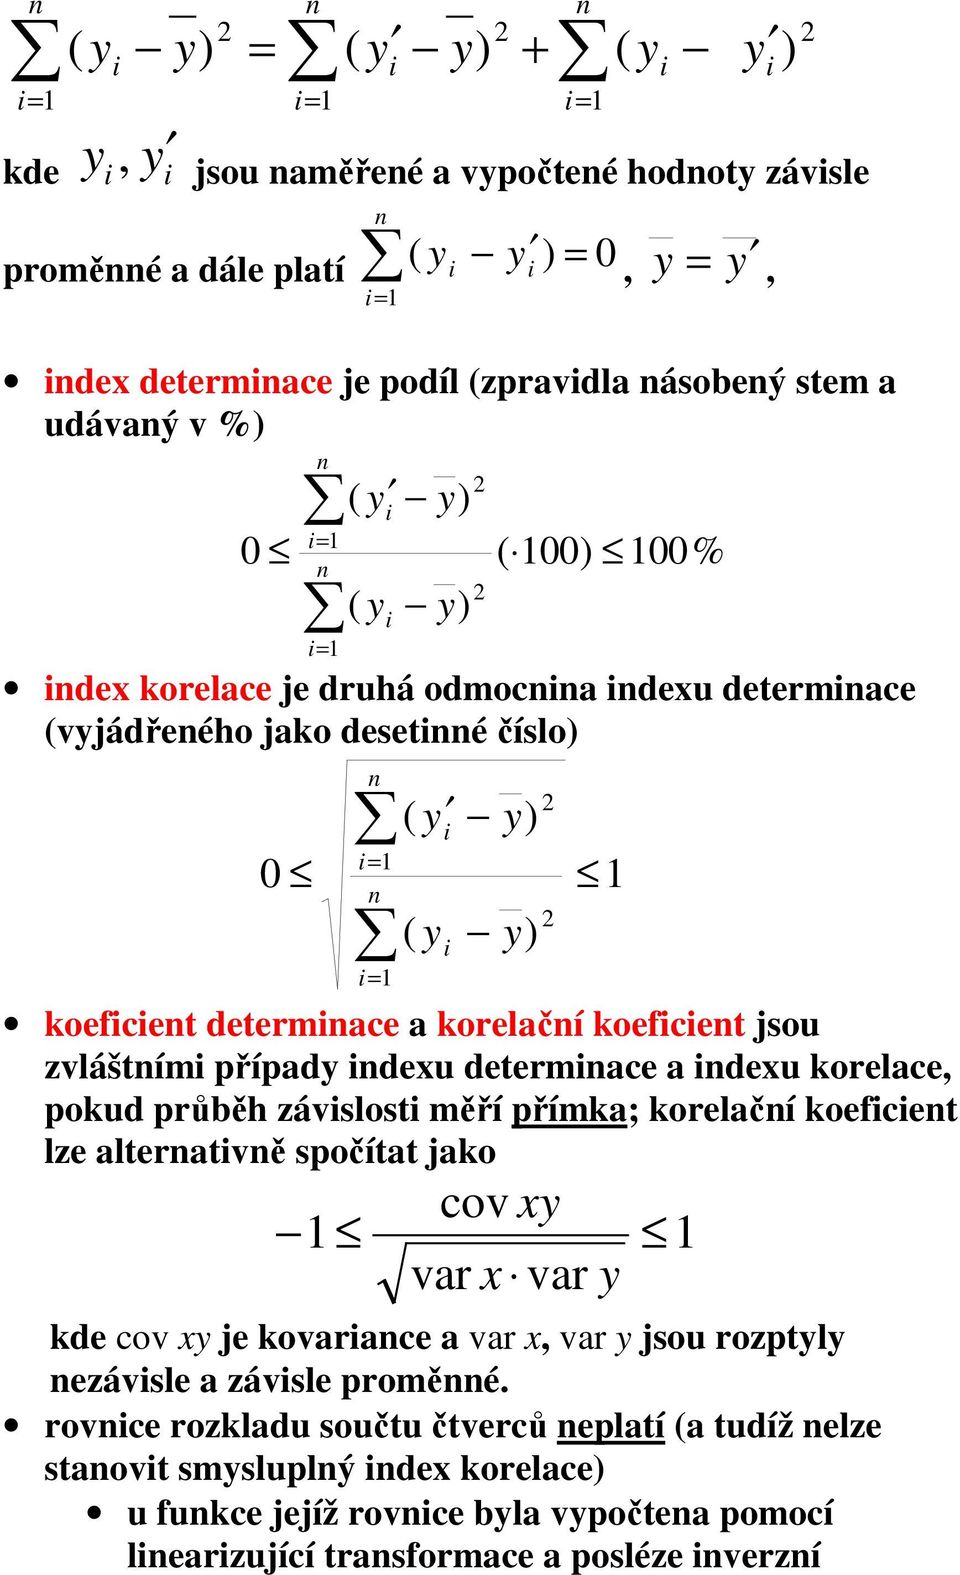 korelace, pokud průběh závslost měří přímka; korelačí koefcet lze alteratvě spočítat jako x x var var cov kde cov x je kovarace a var x, var jsou rozptl ezávsle a